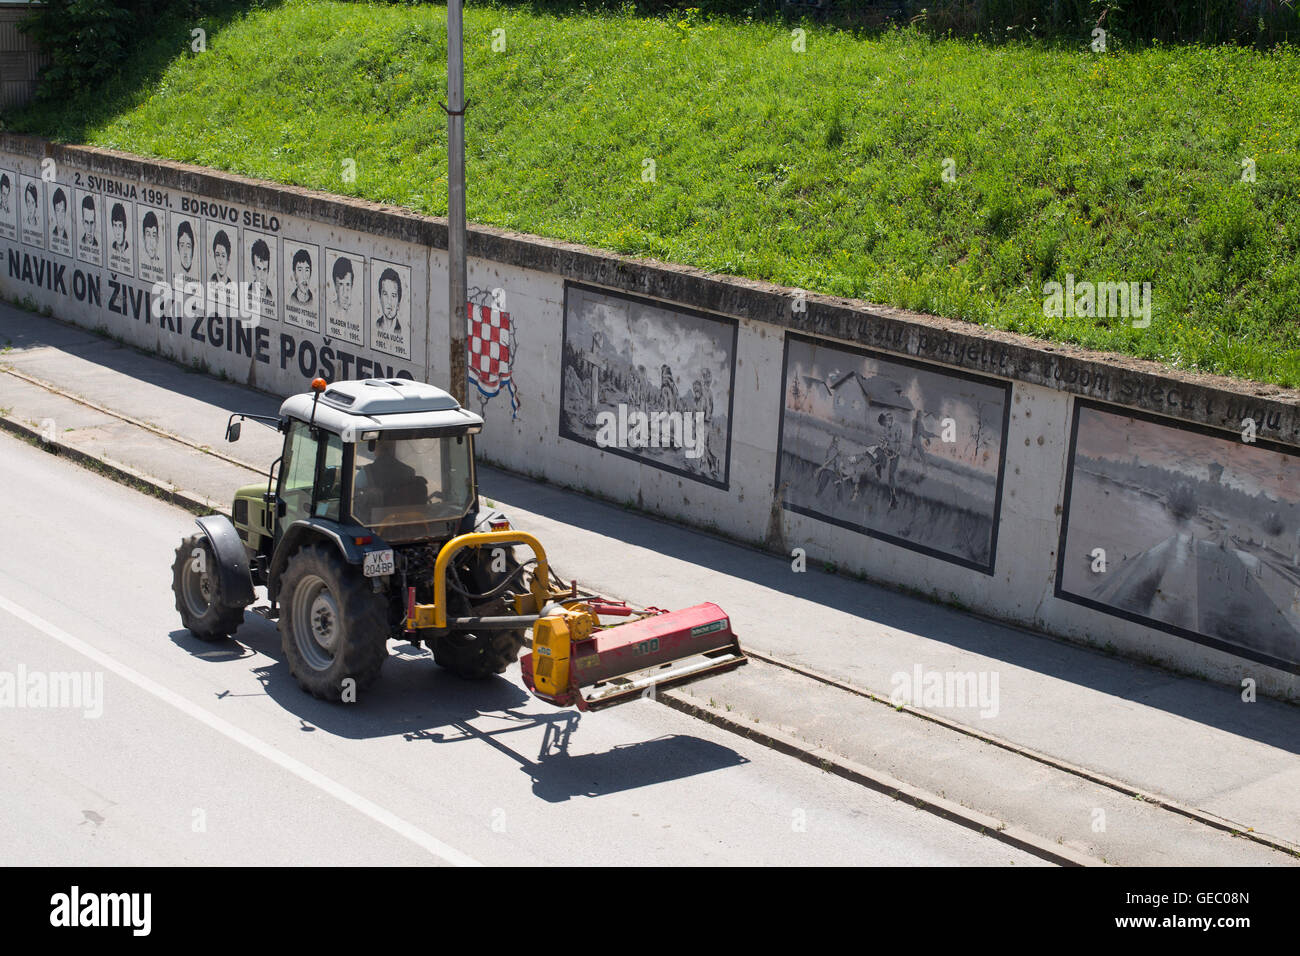 Un tractor pasando delante de Borovo Selo Memorial muro: "Quien muere en honestidad - vive eternamente" Foto de stock